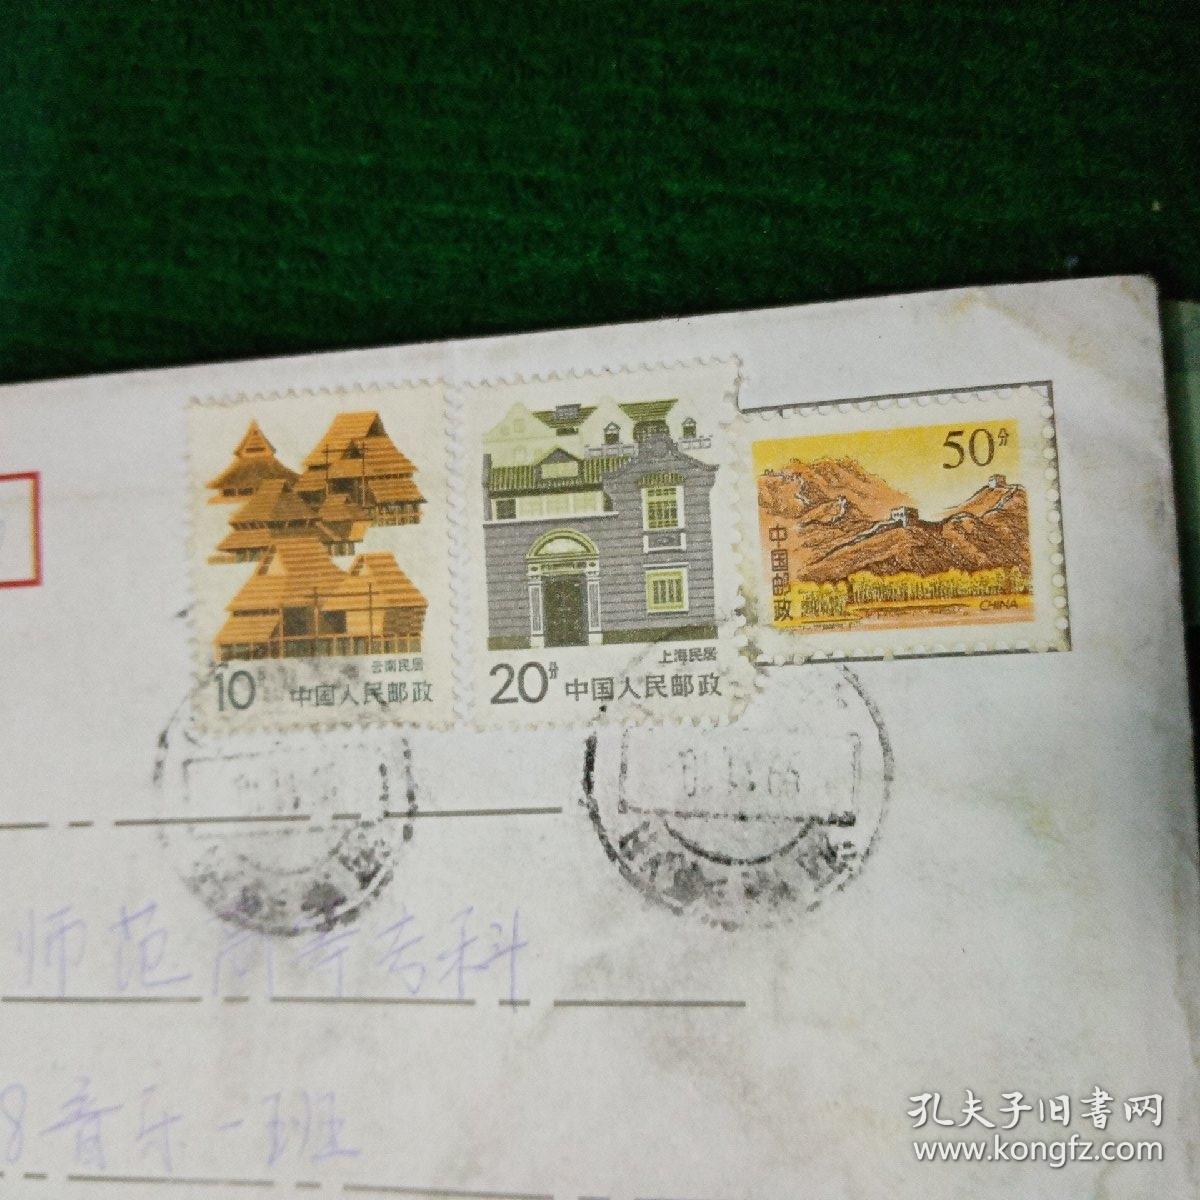 中国人民邮政和中国邮政邮票混贴实寄信封 粘贴中国人民邮政10分云南民居和20分上海民居邮票各一张，粘贴中国邮政50分长城邮票一张，落地戳为河南开封1999.11.13中支分拣1